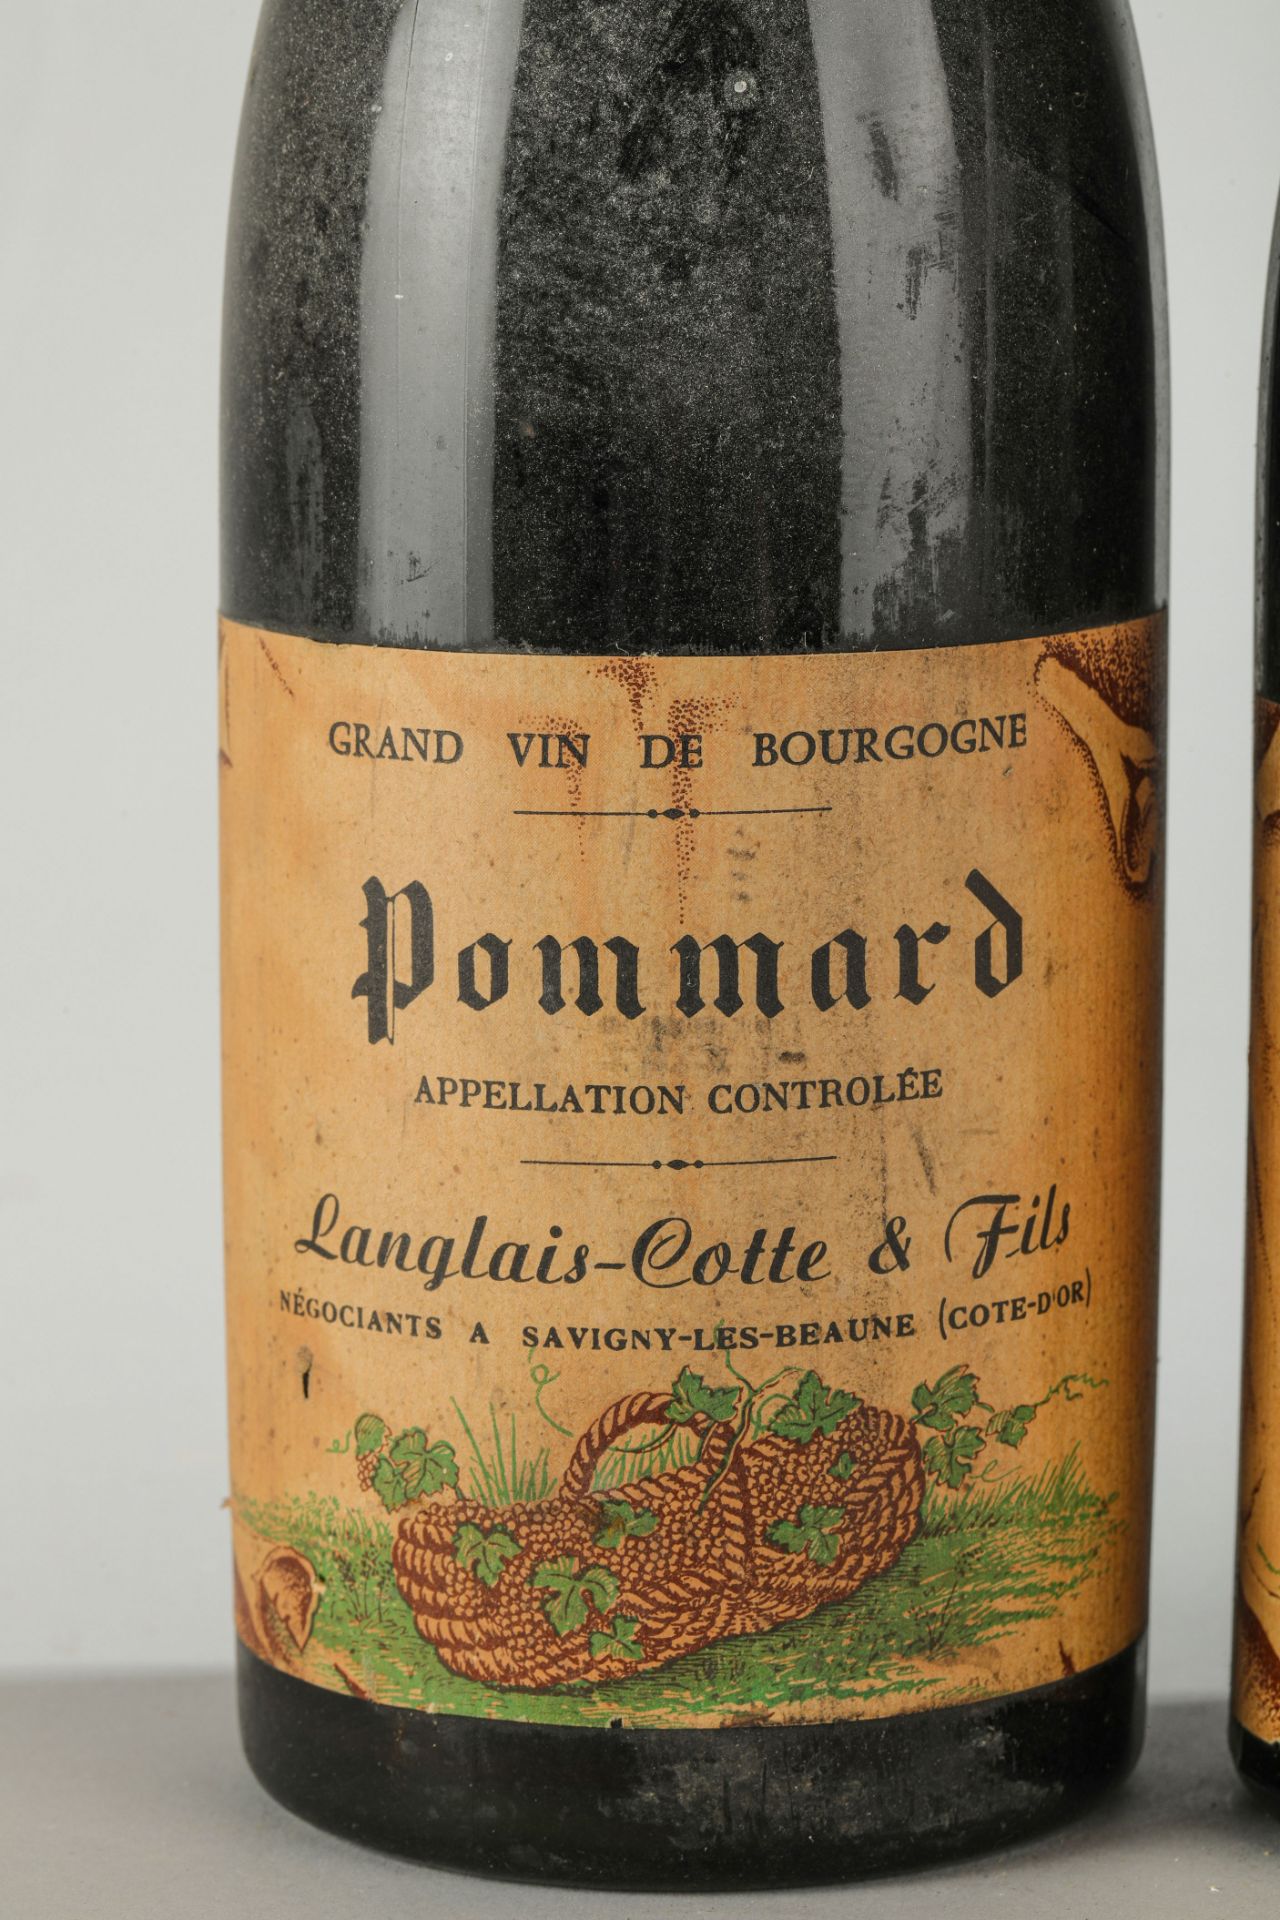 DOMAINE LANGLAIS COTTE ET FILS 1959 Négociants à Savigny les Beaune 3 bouteilles une CORTON 1959 Une - Image 2 of 4